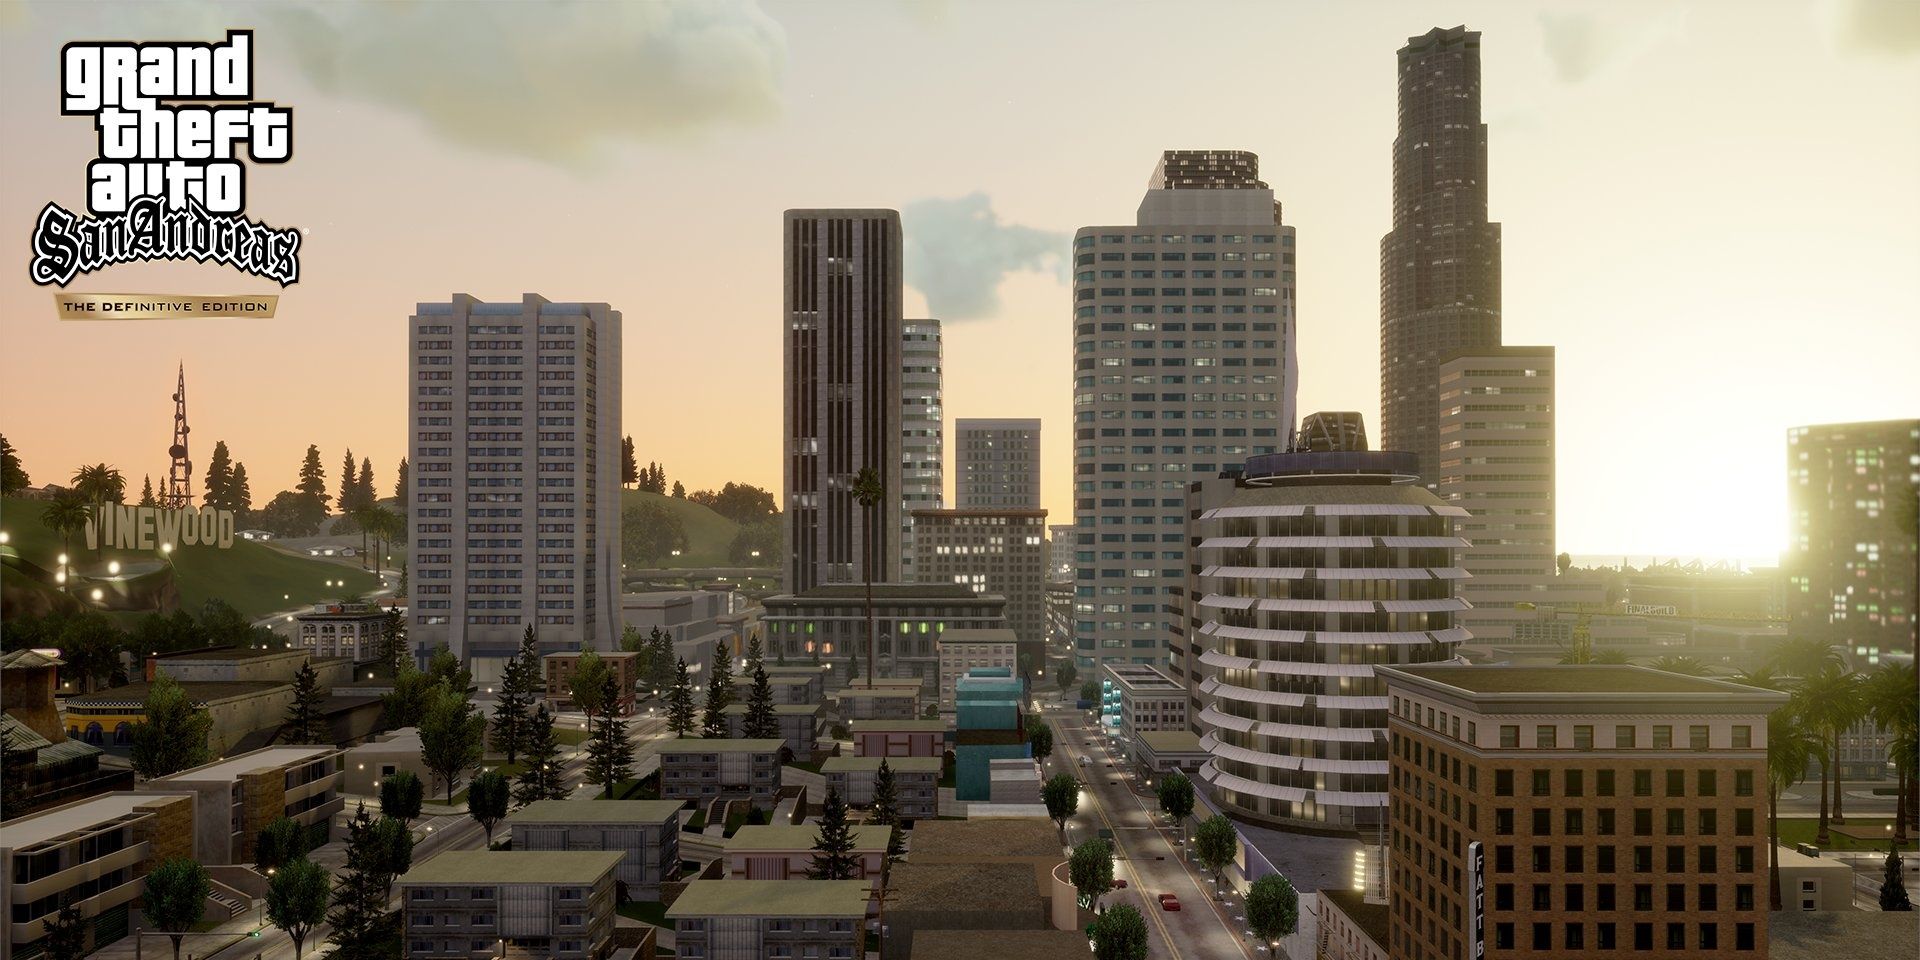 ¿Cuánto tiempo se tarda en vencer a Grand Theft Auto: San Andreas?